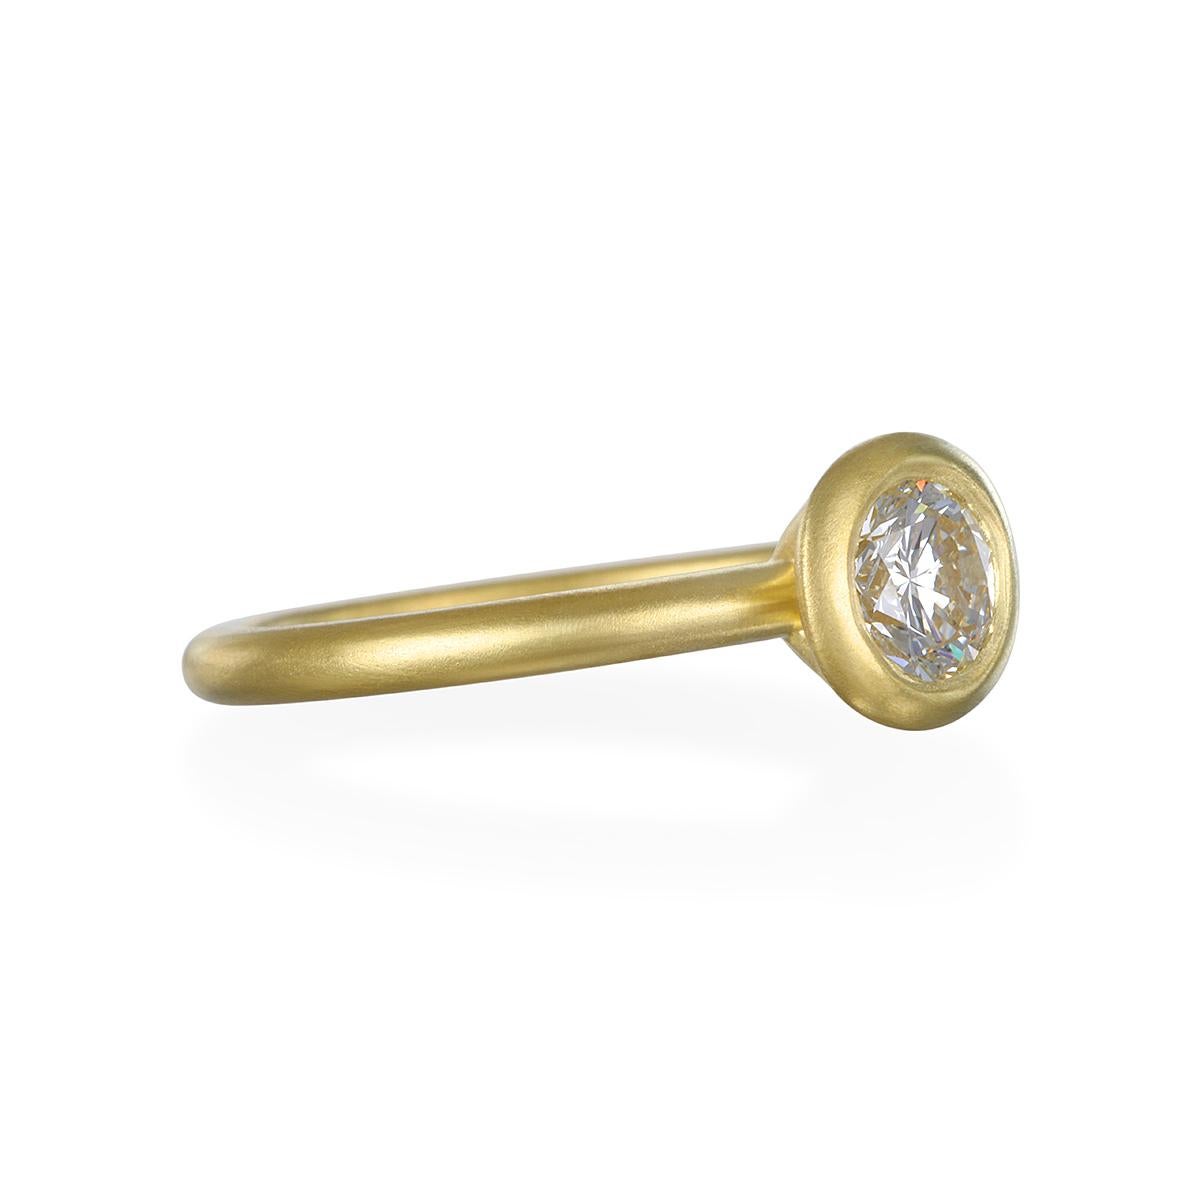 Dieser runde Diamant mit Brillantschliff wurde in Handarbeit aus 18 Karat Gold* gefertigt und ist der perfekte Verlobungsring für die Braut von heute. Perfekt zum Stapeln mit anderen Ringen.

Diamant: Runder Brillantschliff .46 Karat 
Qualität: J